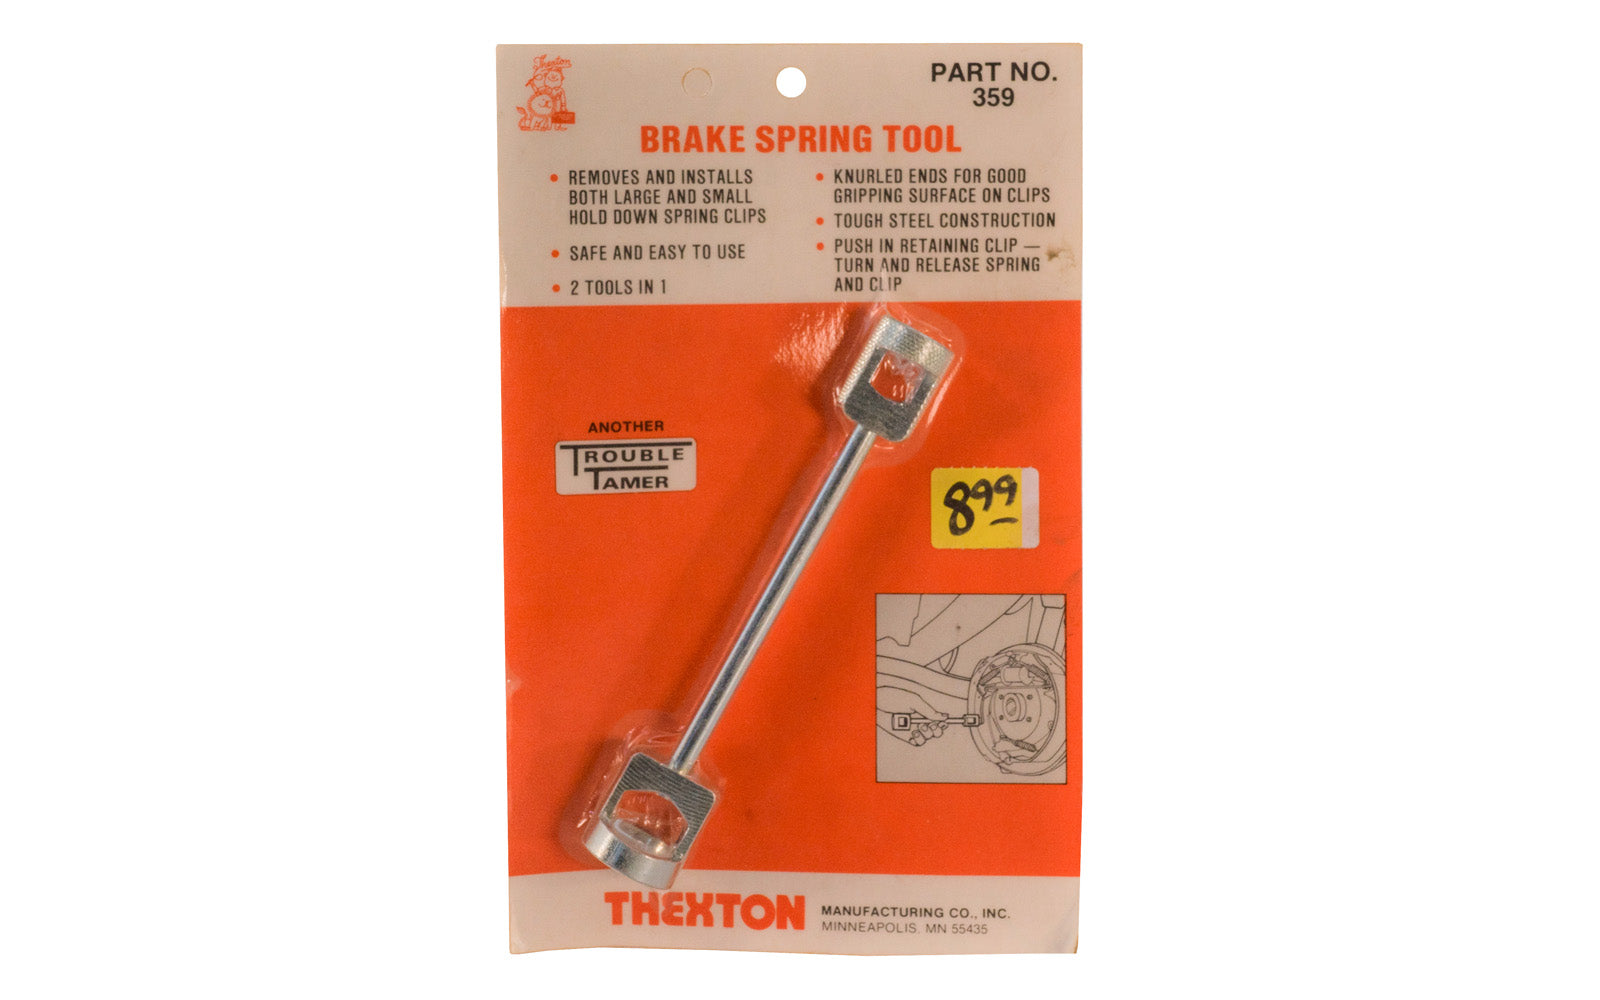 Thexton Brake Spring Tool. Part No. 359.  Thexton Manufacturing Company, Minneapolis MINN.